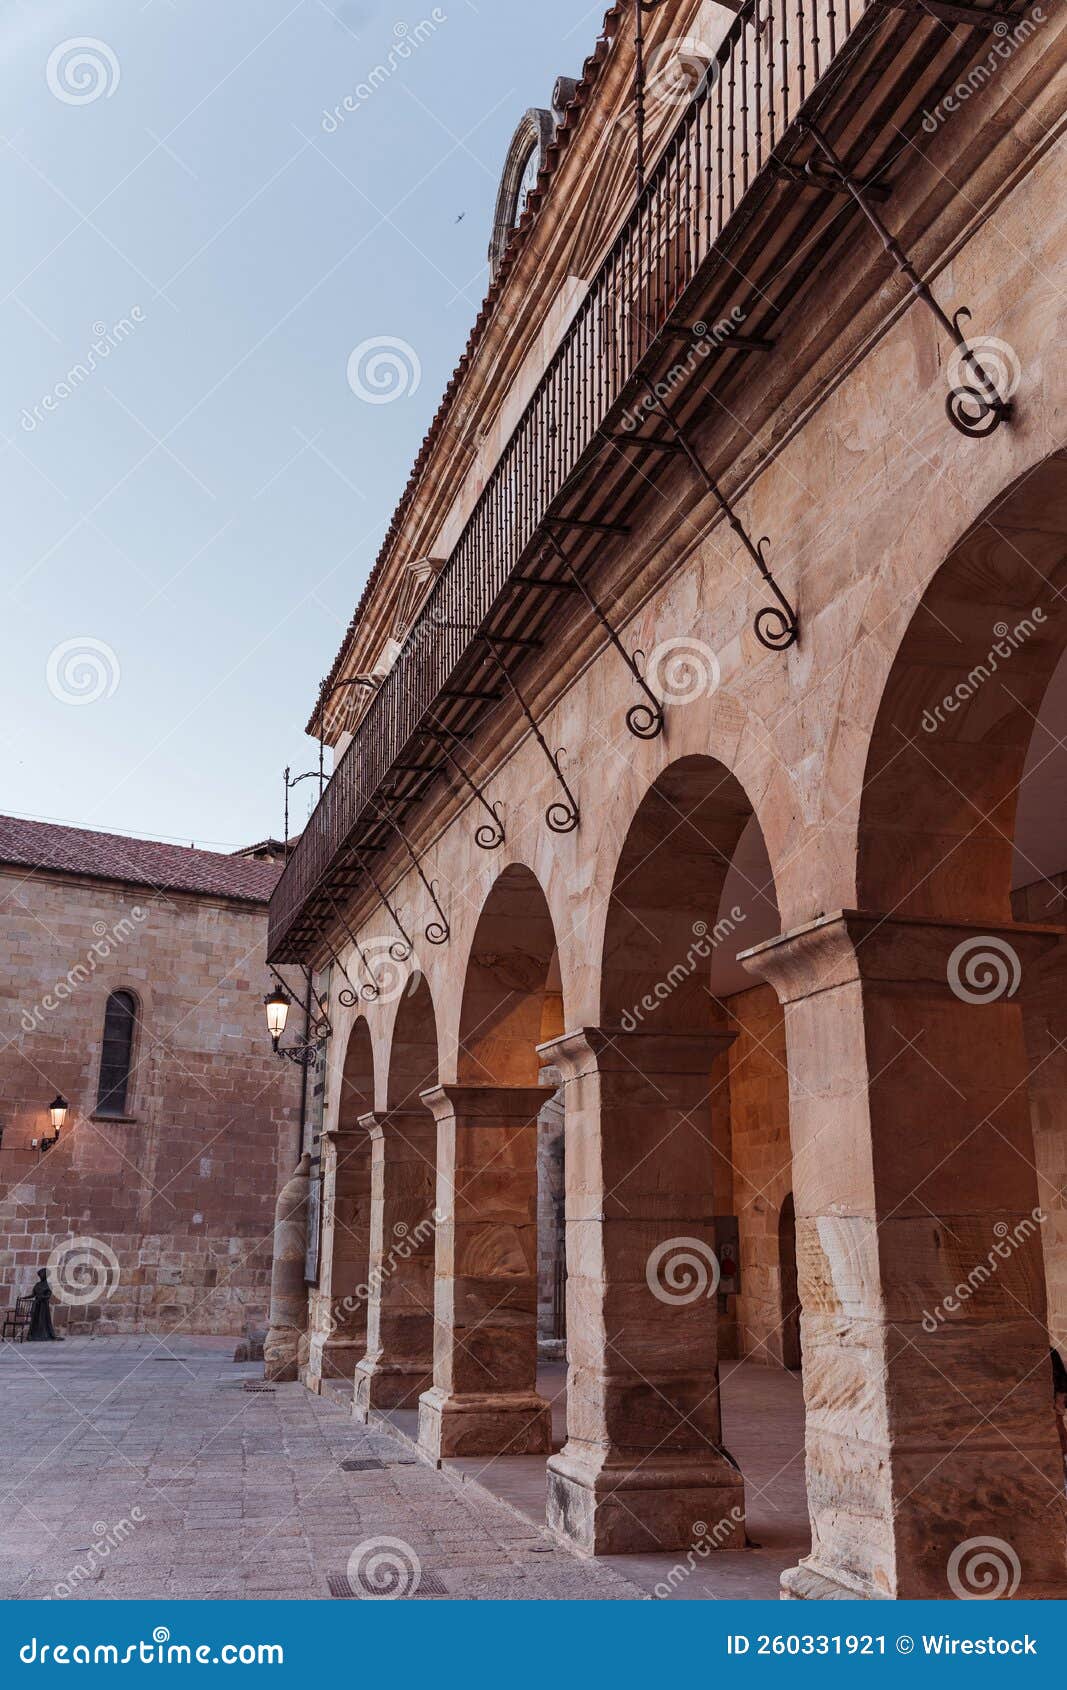 vertical shot of centro cultural palacio de la audiencia building with arches, soria, spain